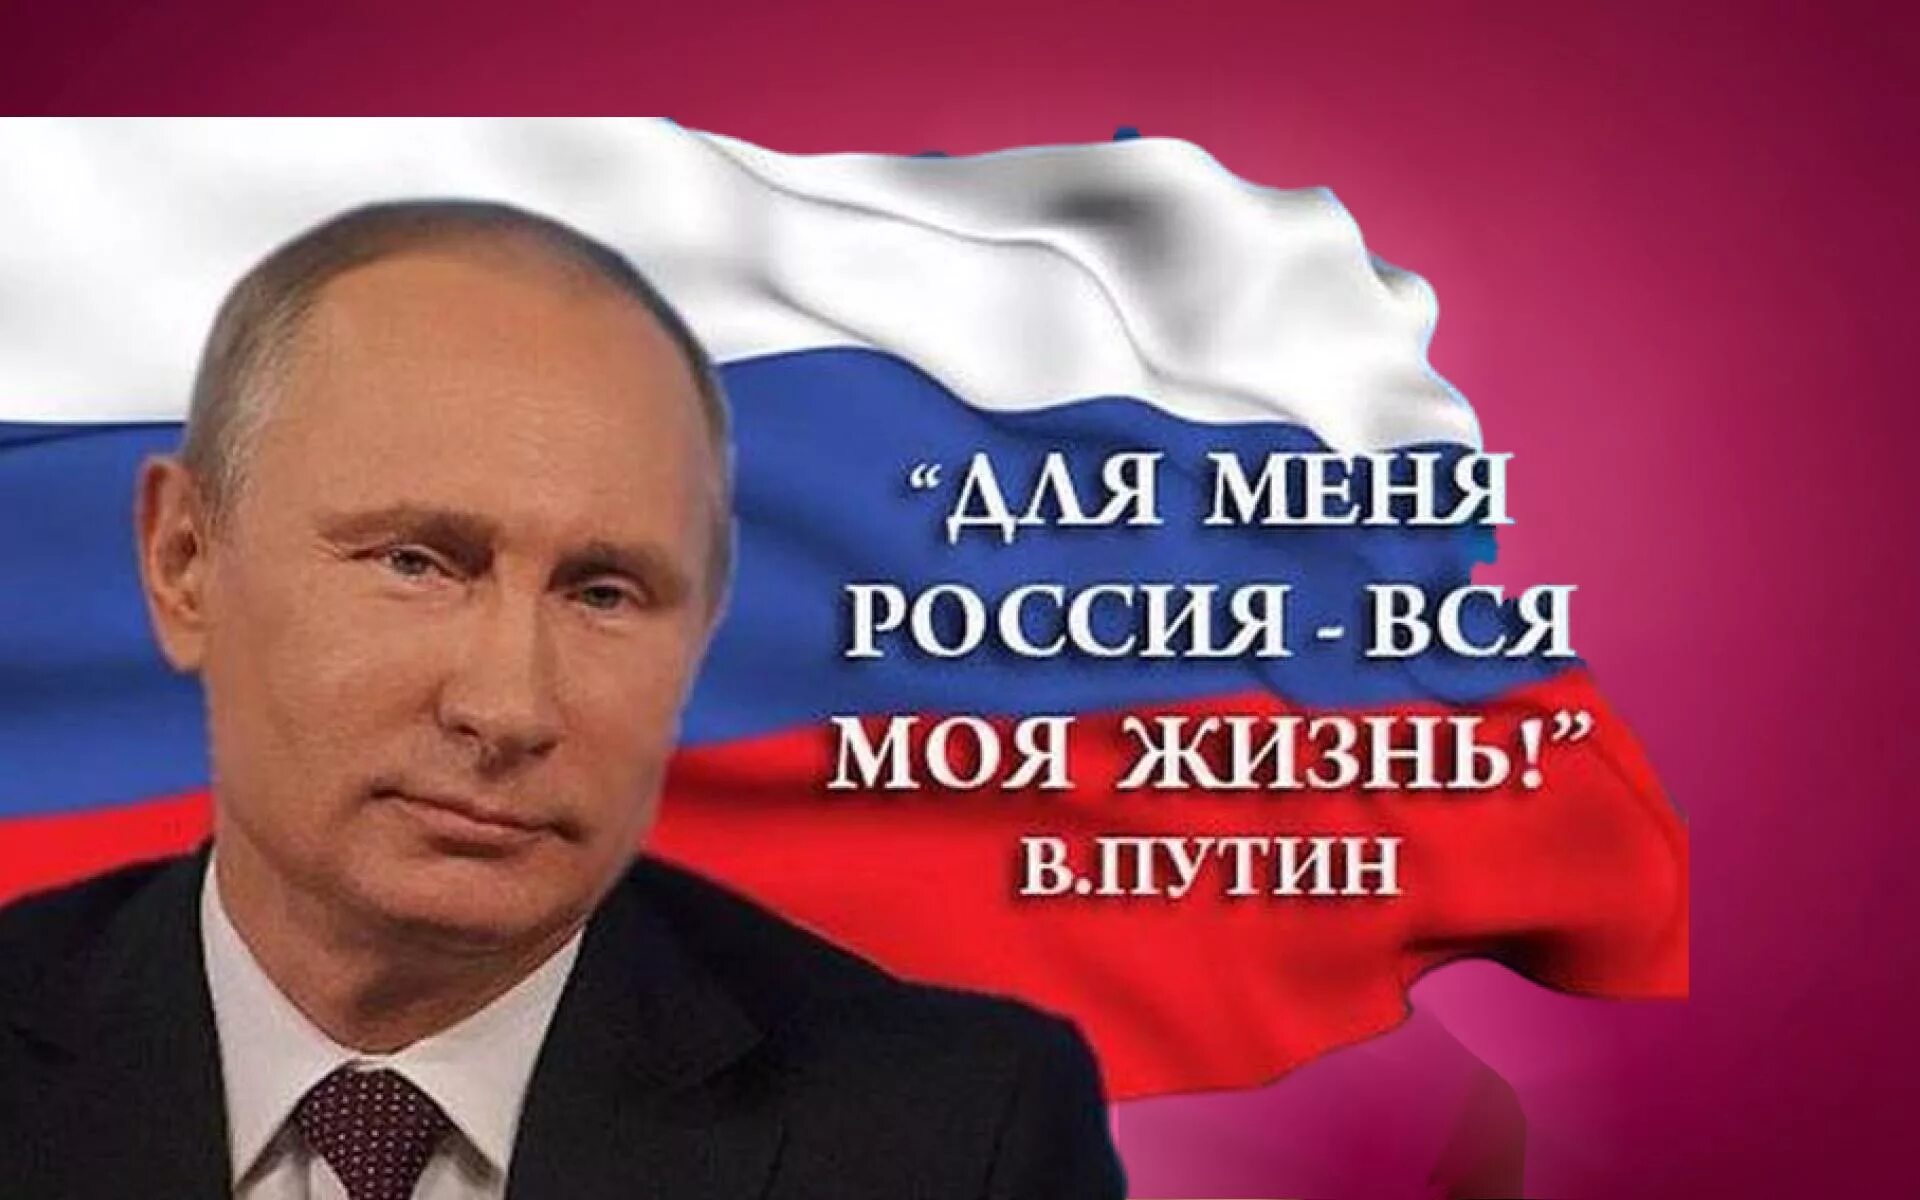 Со слов президента. Россия за Путина.